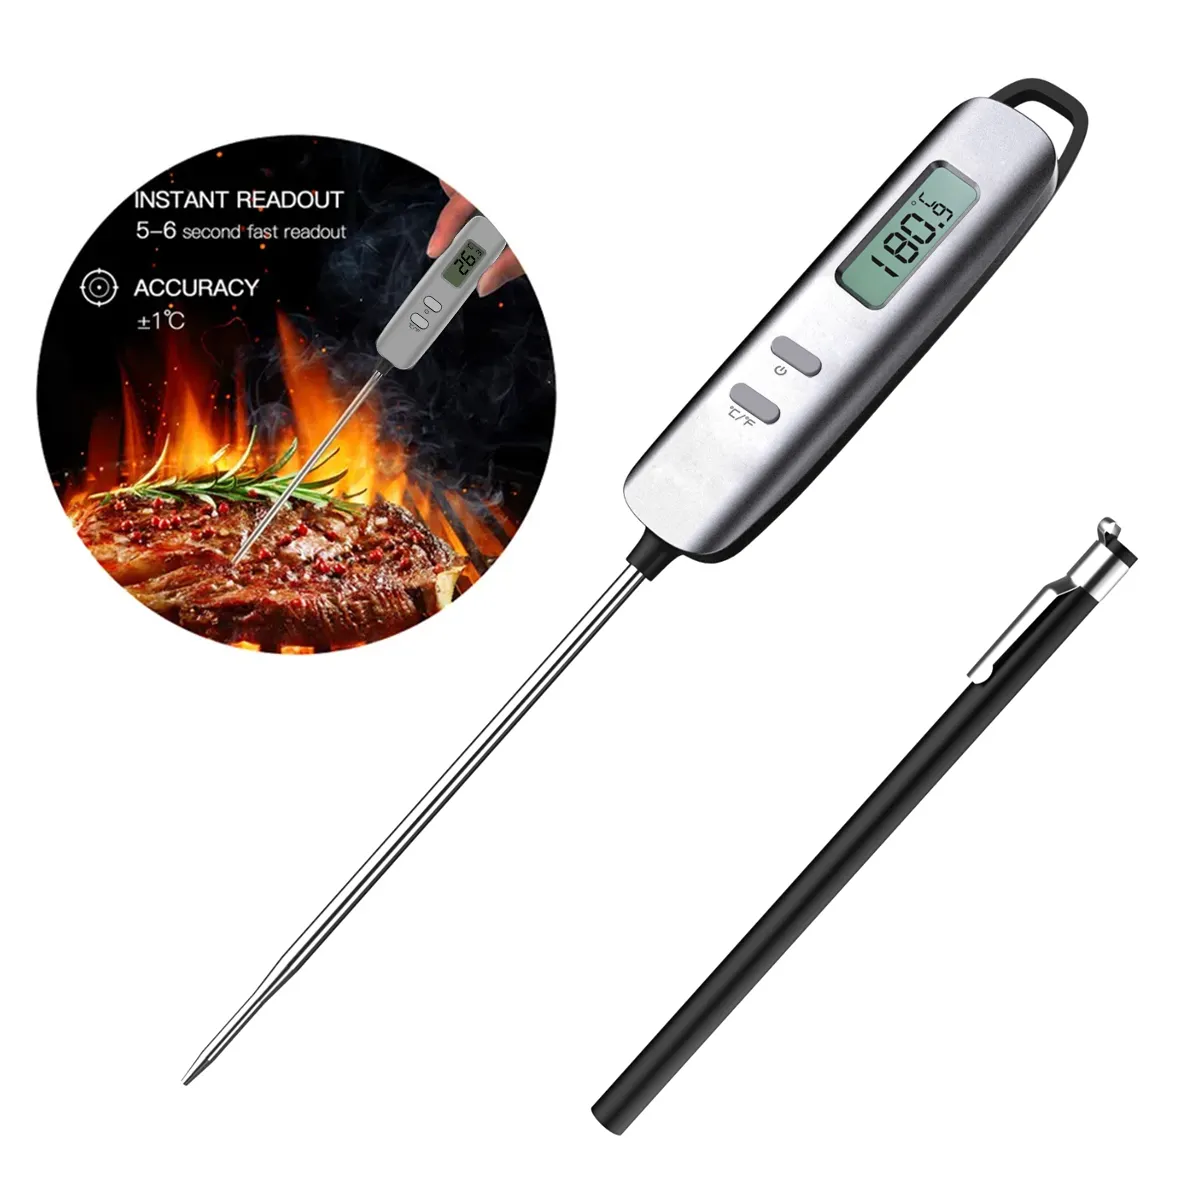 Penna tipo fabbrica all'ingrosso più economico schermo lcd display digitale cucina istantanea lettura istantanea carne bbq termometri da cucina